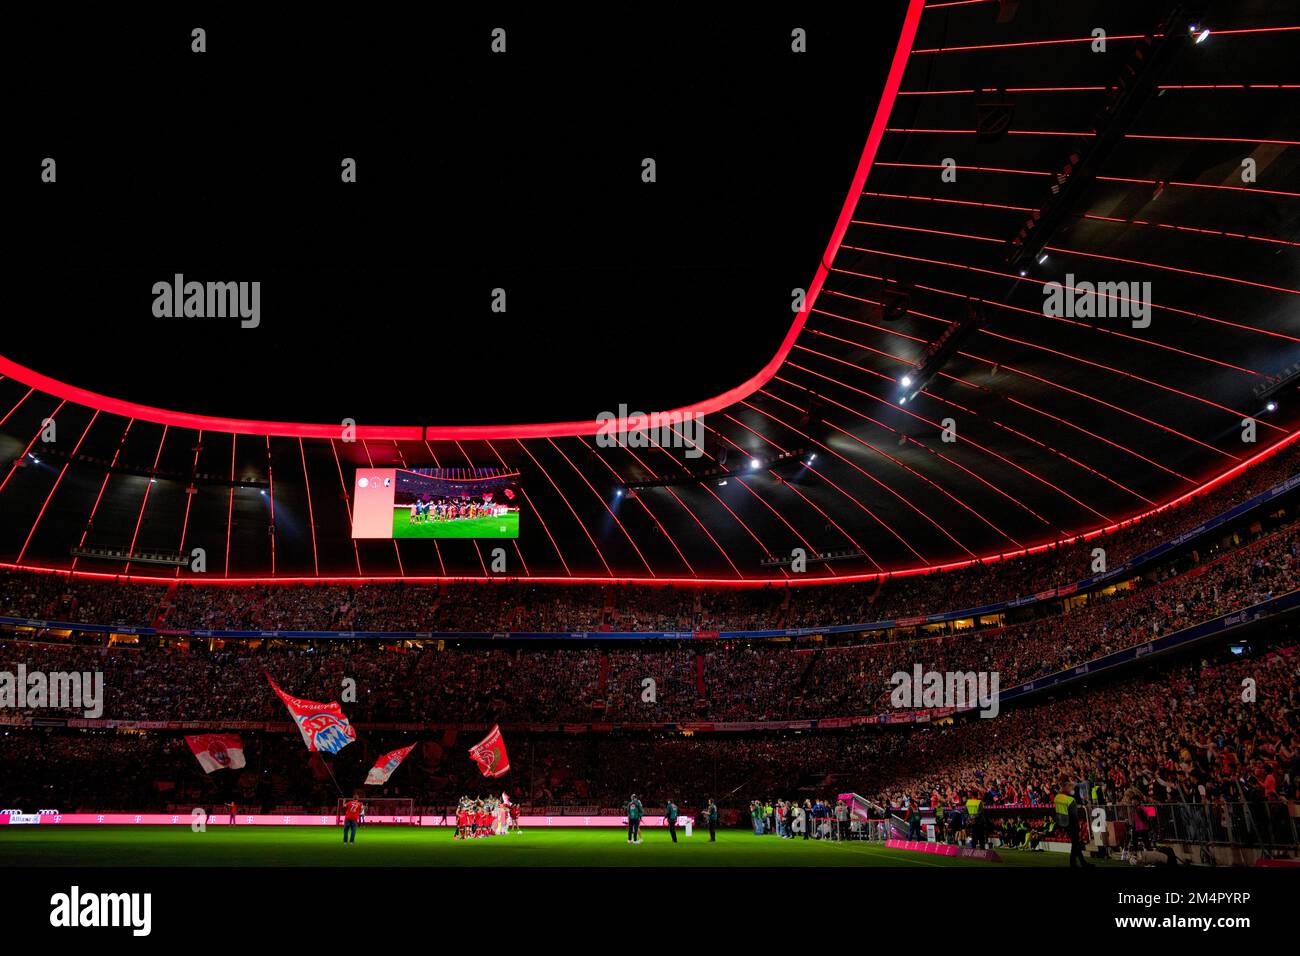 Prise de vue de nuit, équipes sur le terrain, Allianz Arena, Munich, Bavière, Allemagne Banque D'Images